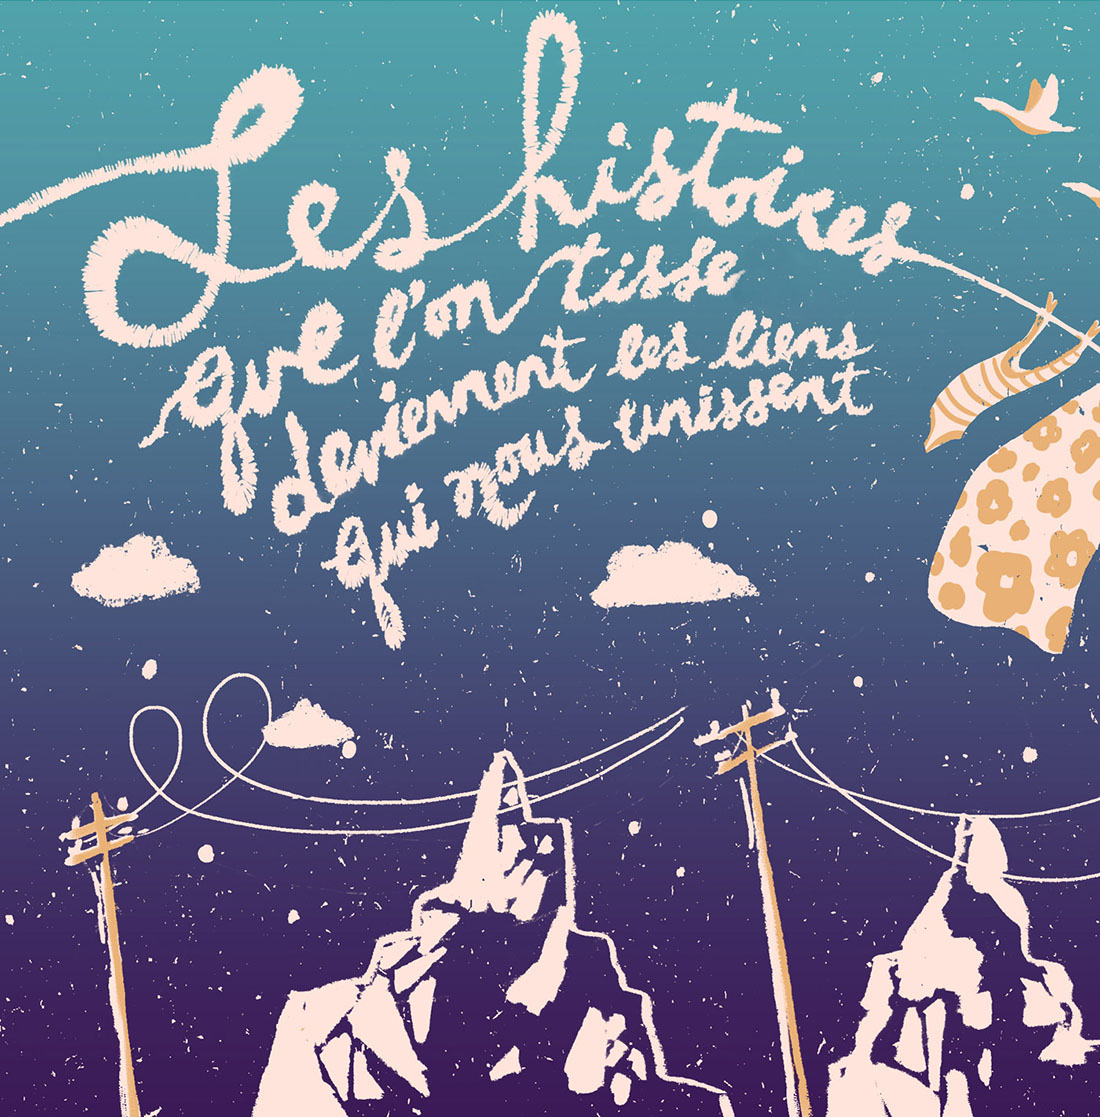 Sérigraphie par l'illustratrice québécoise Marie-Joëlle Fournier représentant des mains qui tricotent, exprimant les liens qui nous unissent